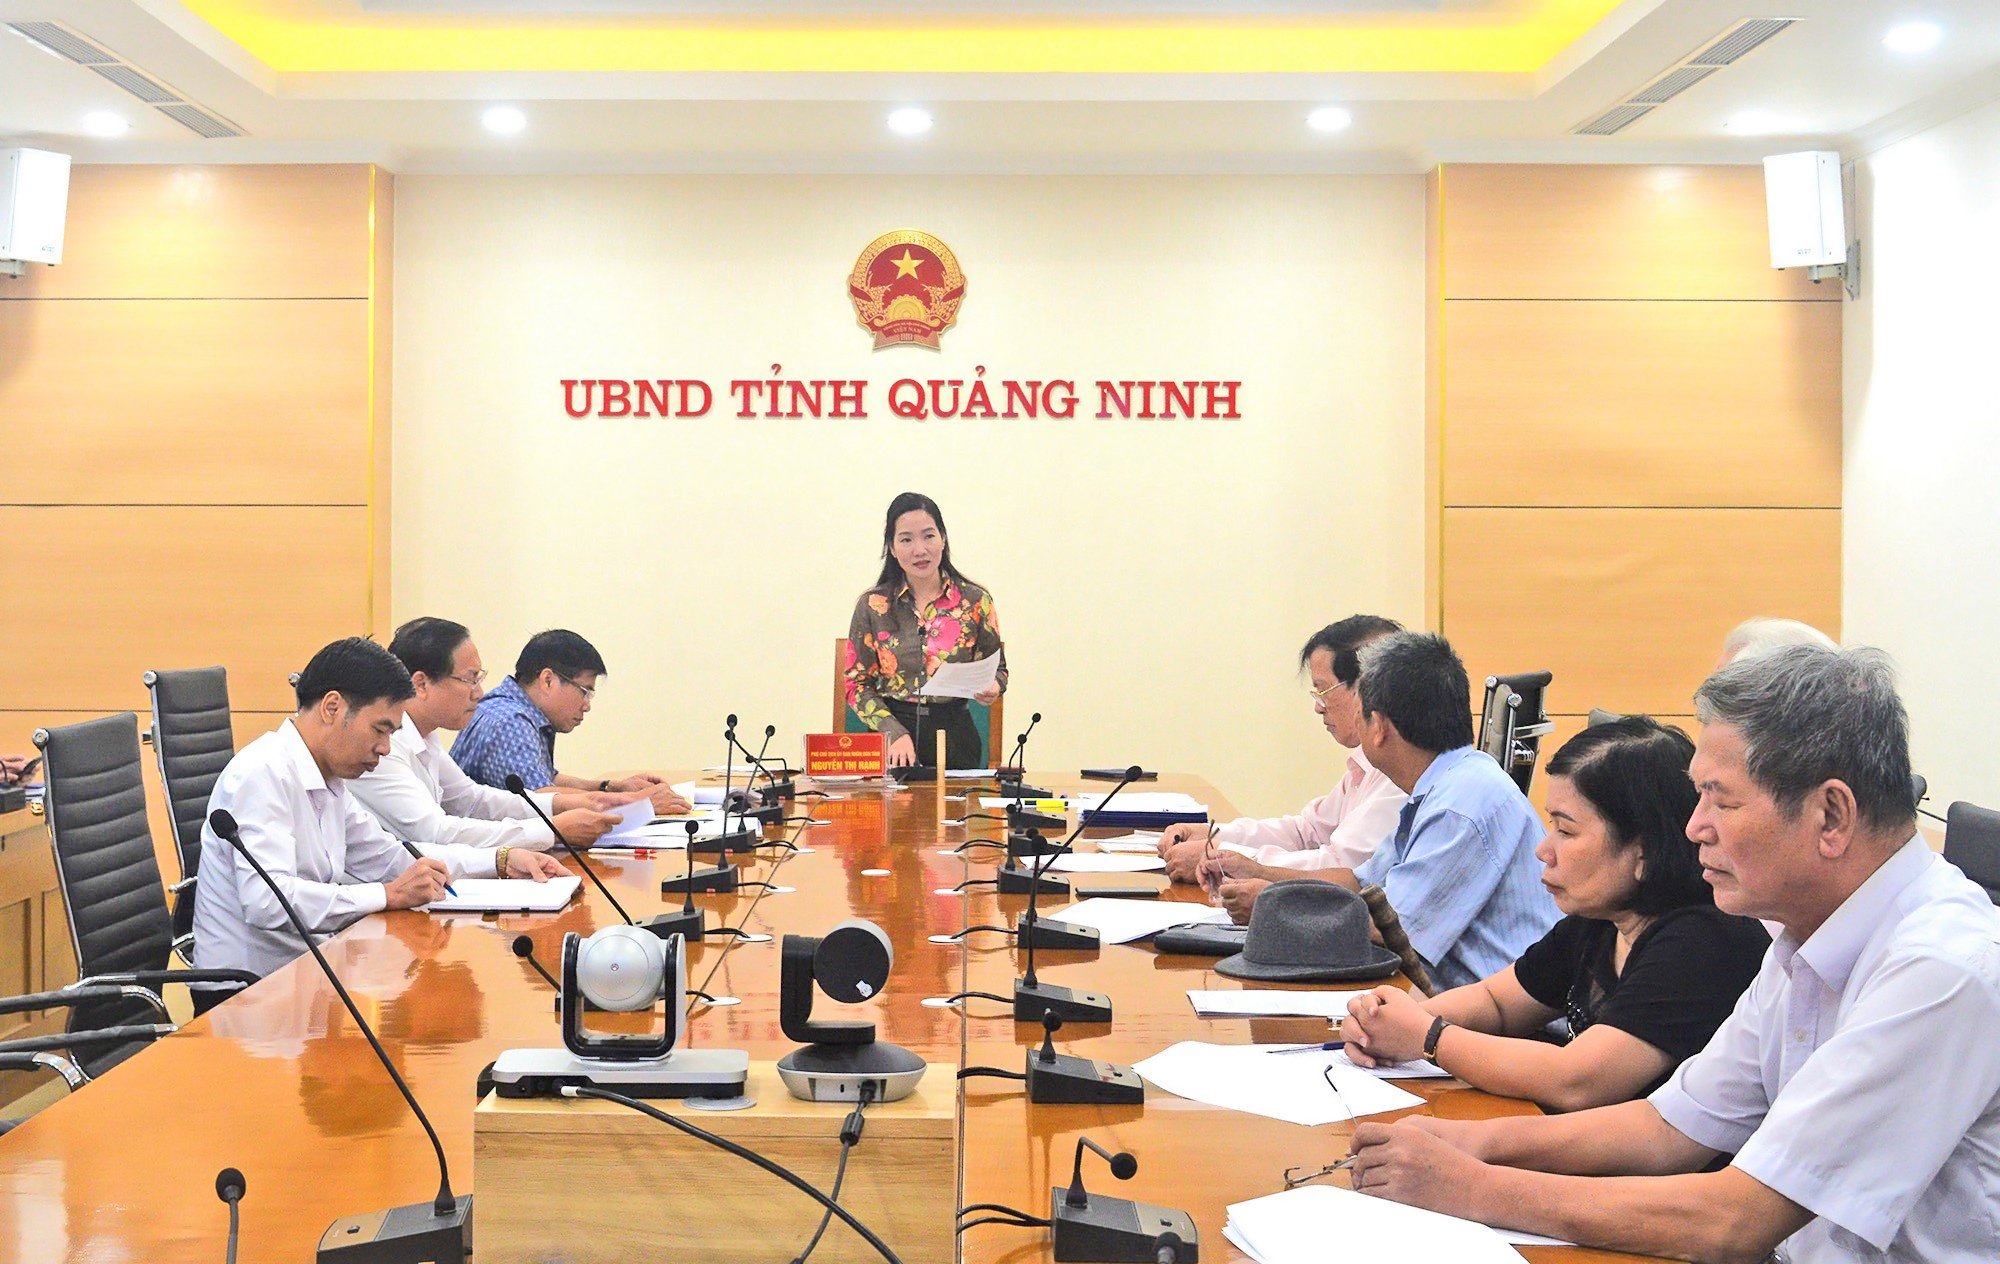 Đồng chí Nguyễn Thị Hạnh, Phó Chủ tịch UBND tỉnh dự và chỉ đạo cuộc họp.